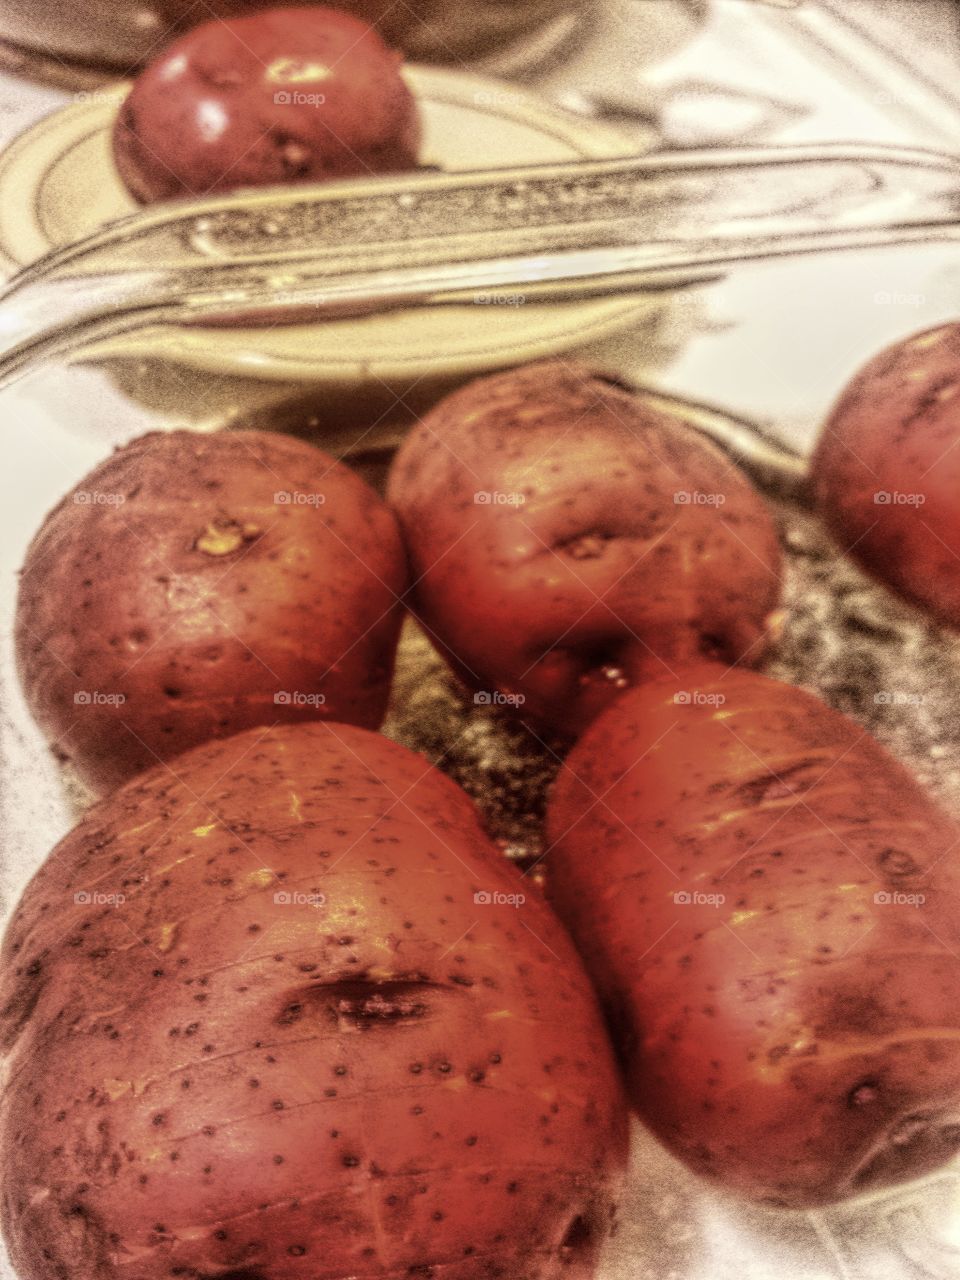 Baked Potatoes for Dinner